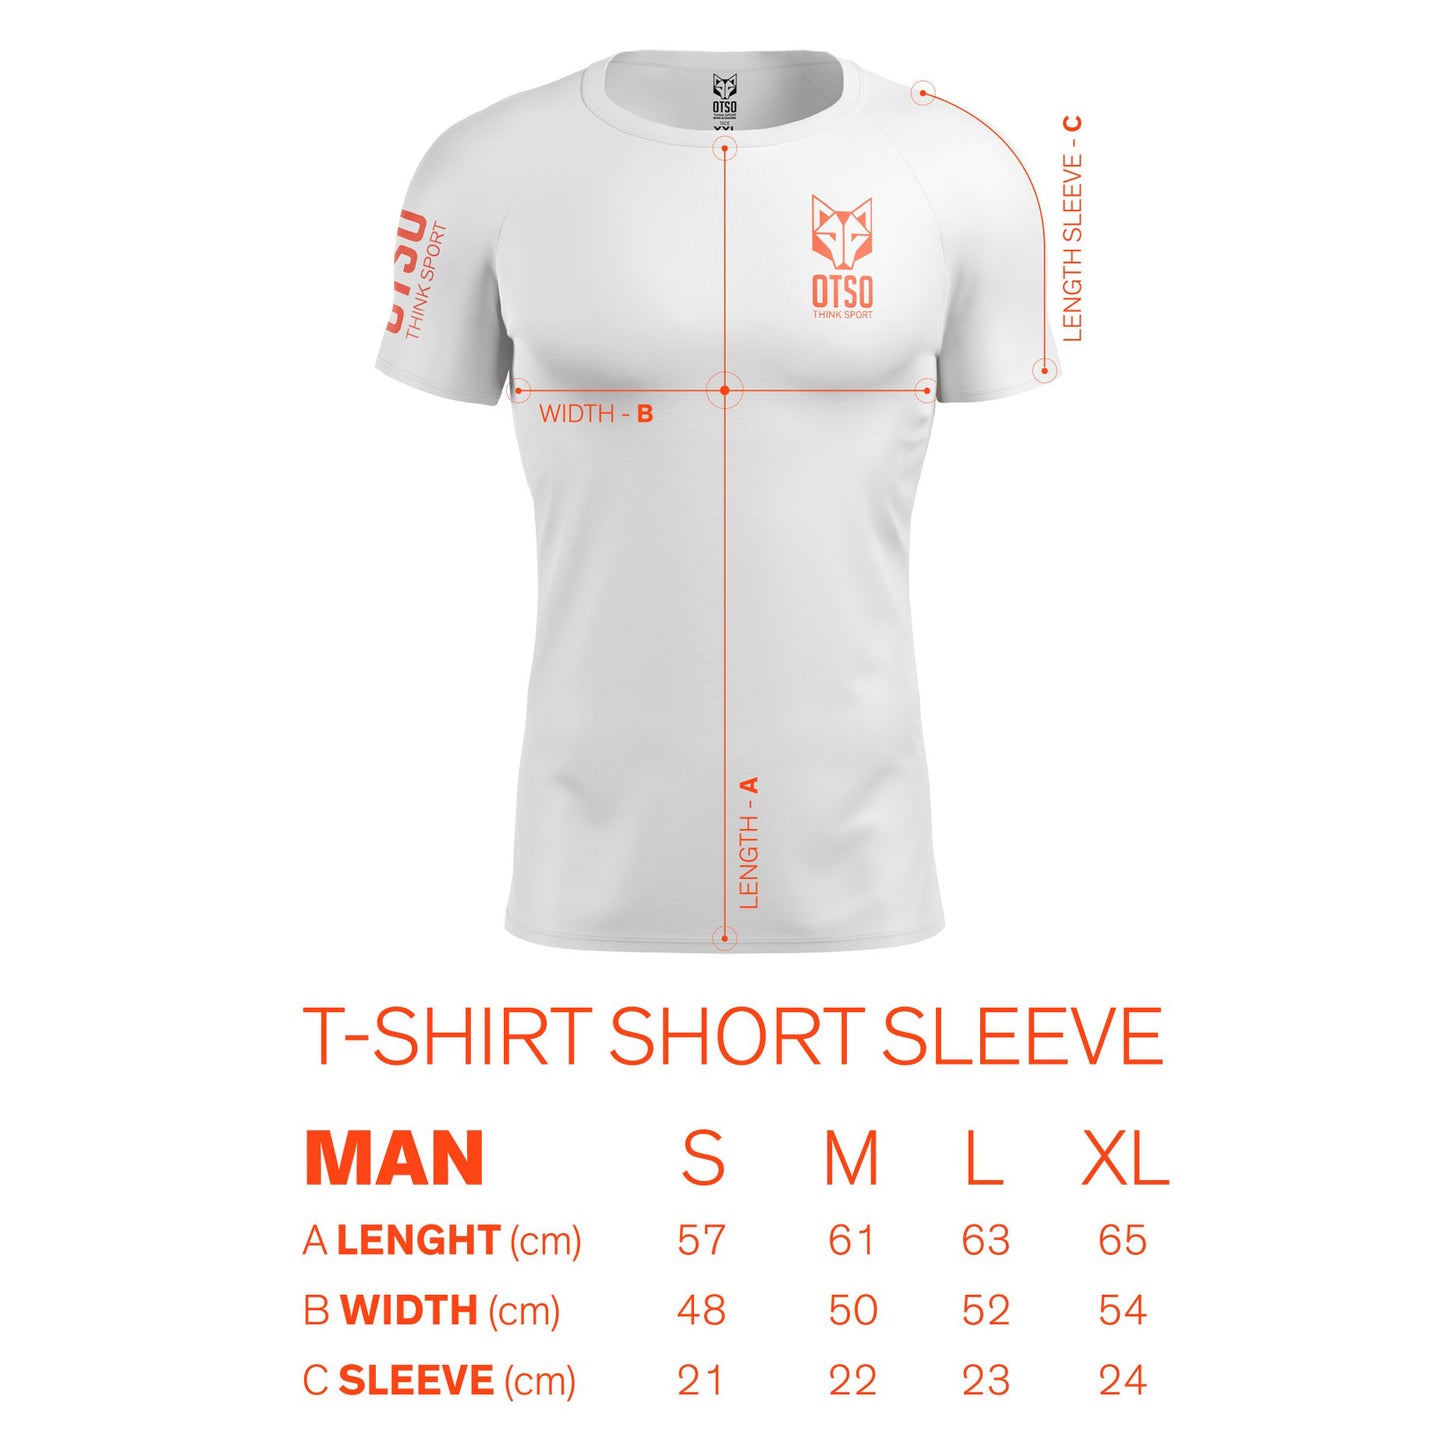 Magliette manica corta uomo - Run Rotterdam (Outlet)